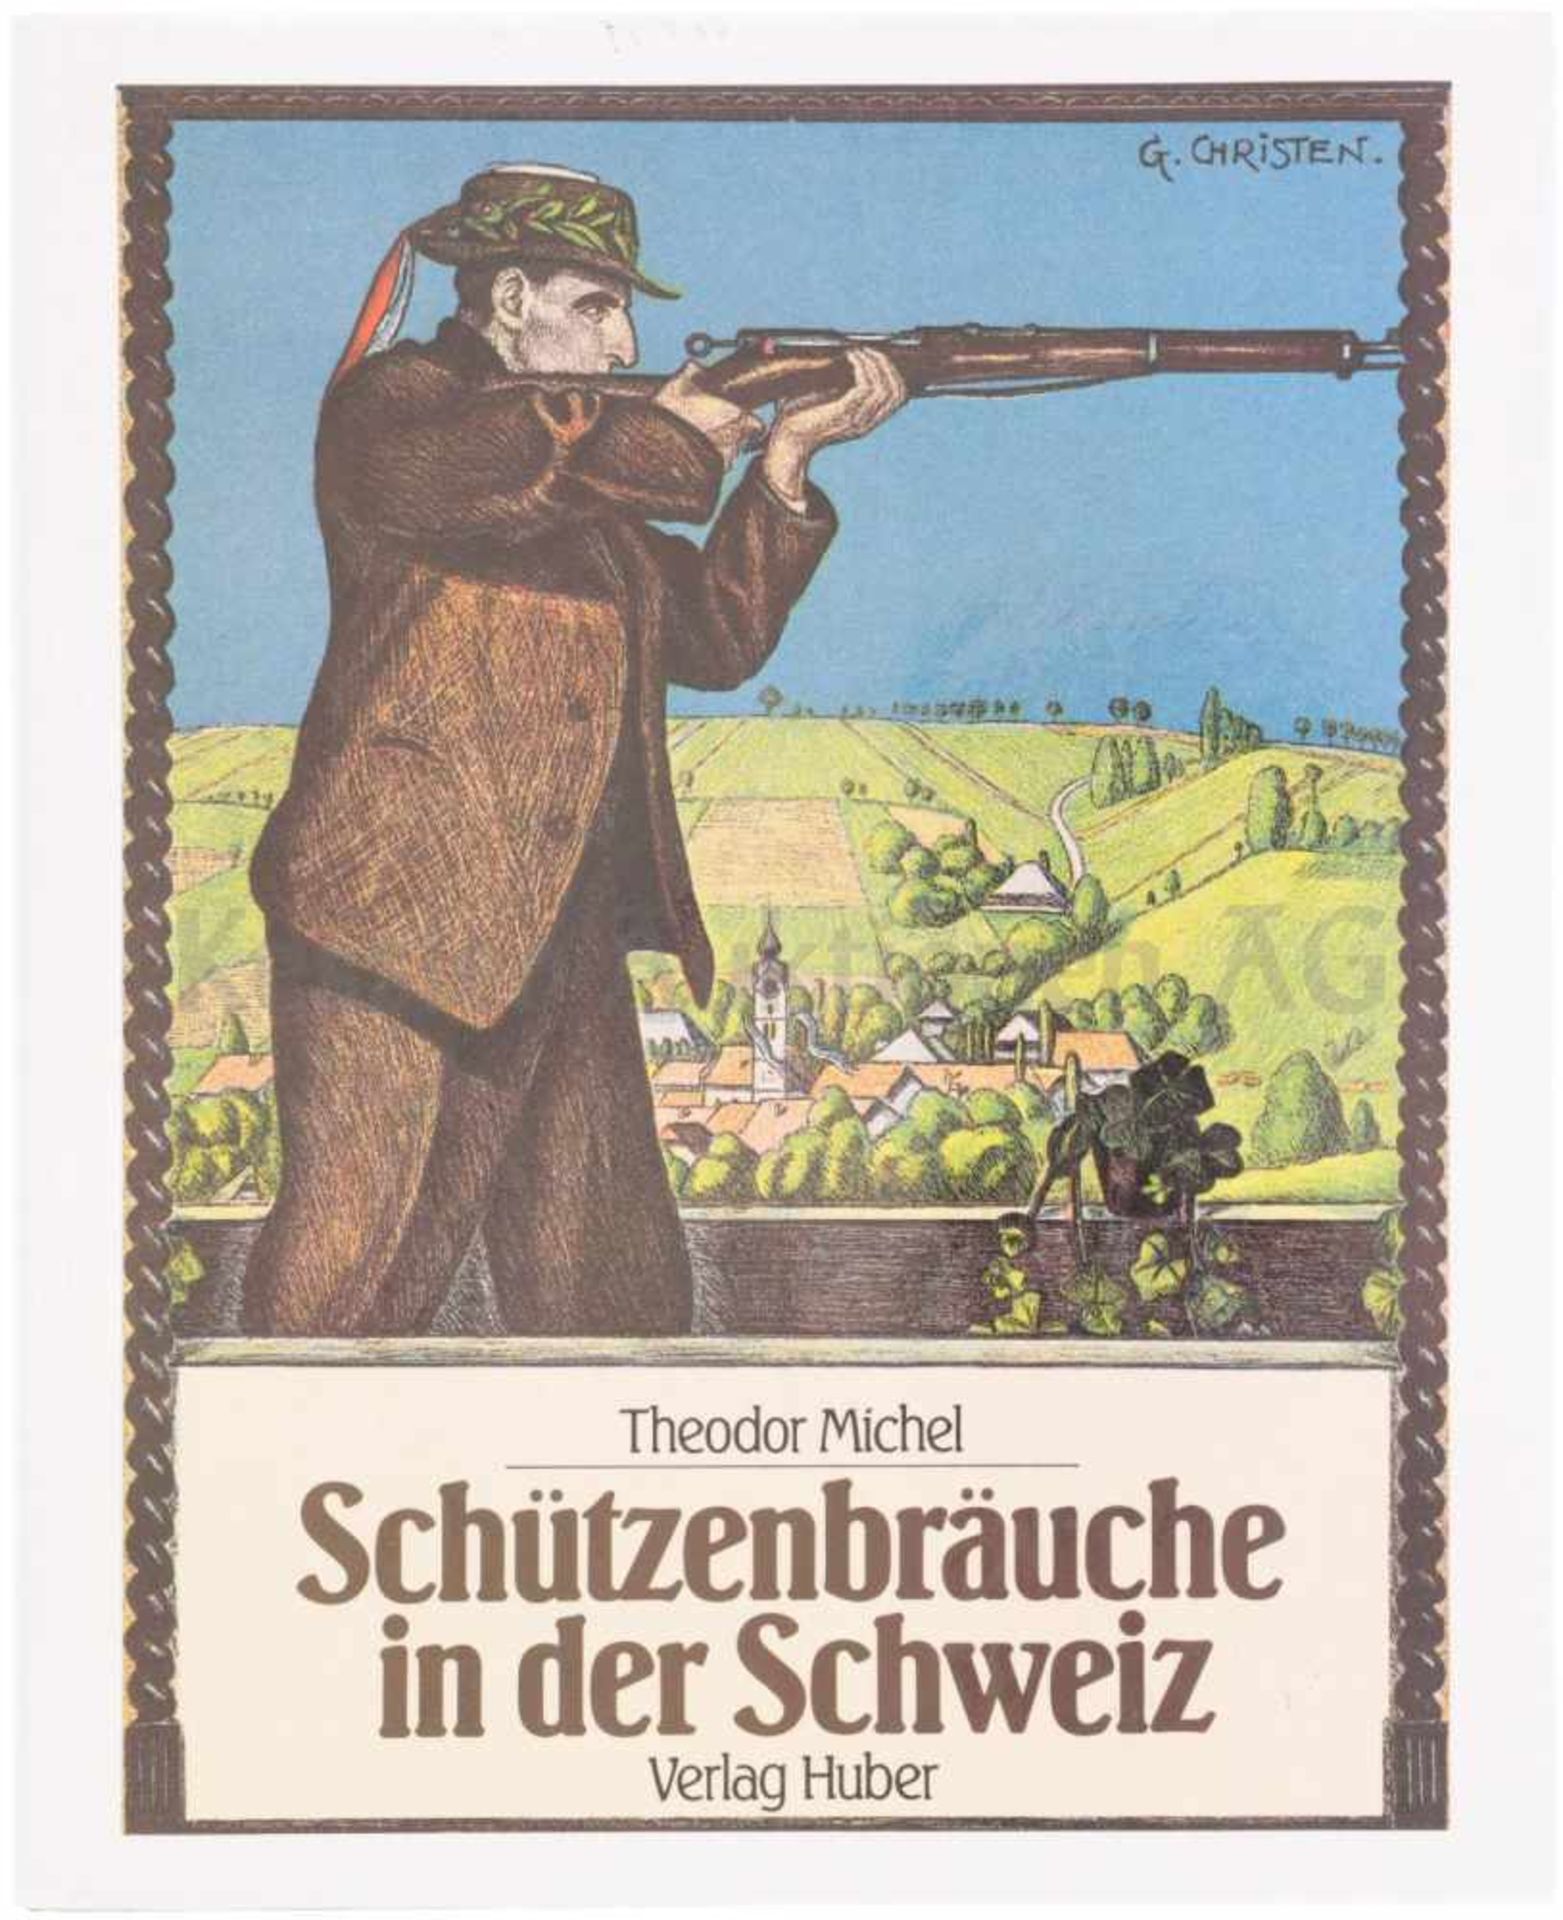 Schützenbräuche in der Schweiz Theodor Michel beschreibt spannend die schweizerischen